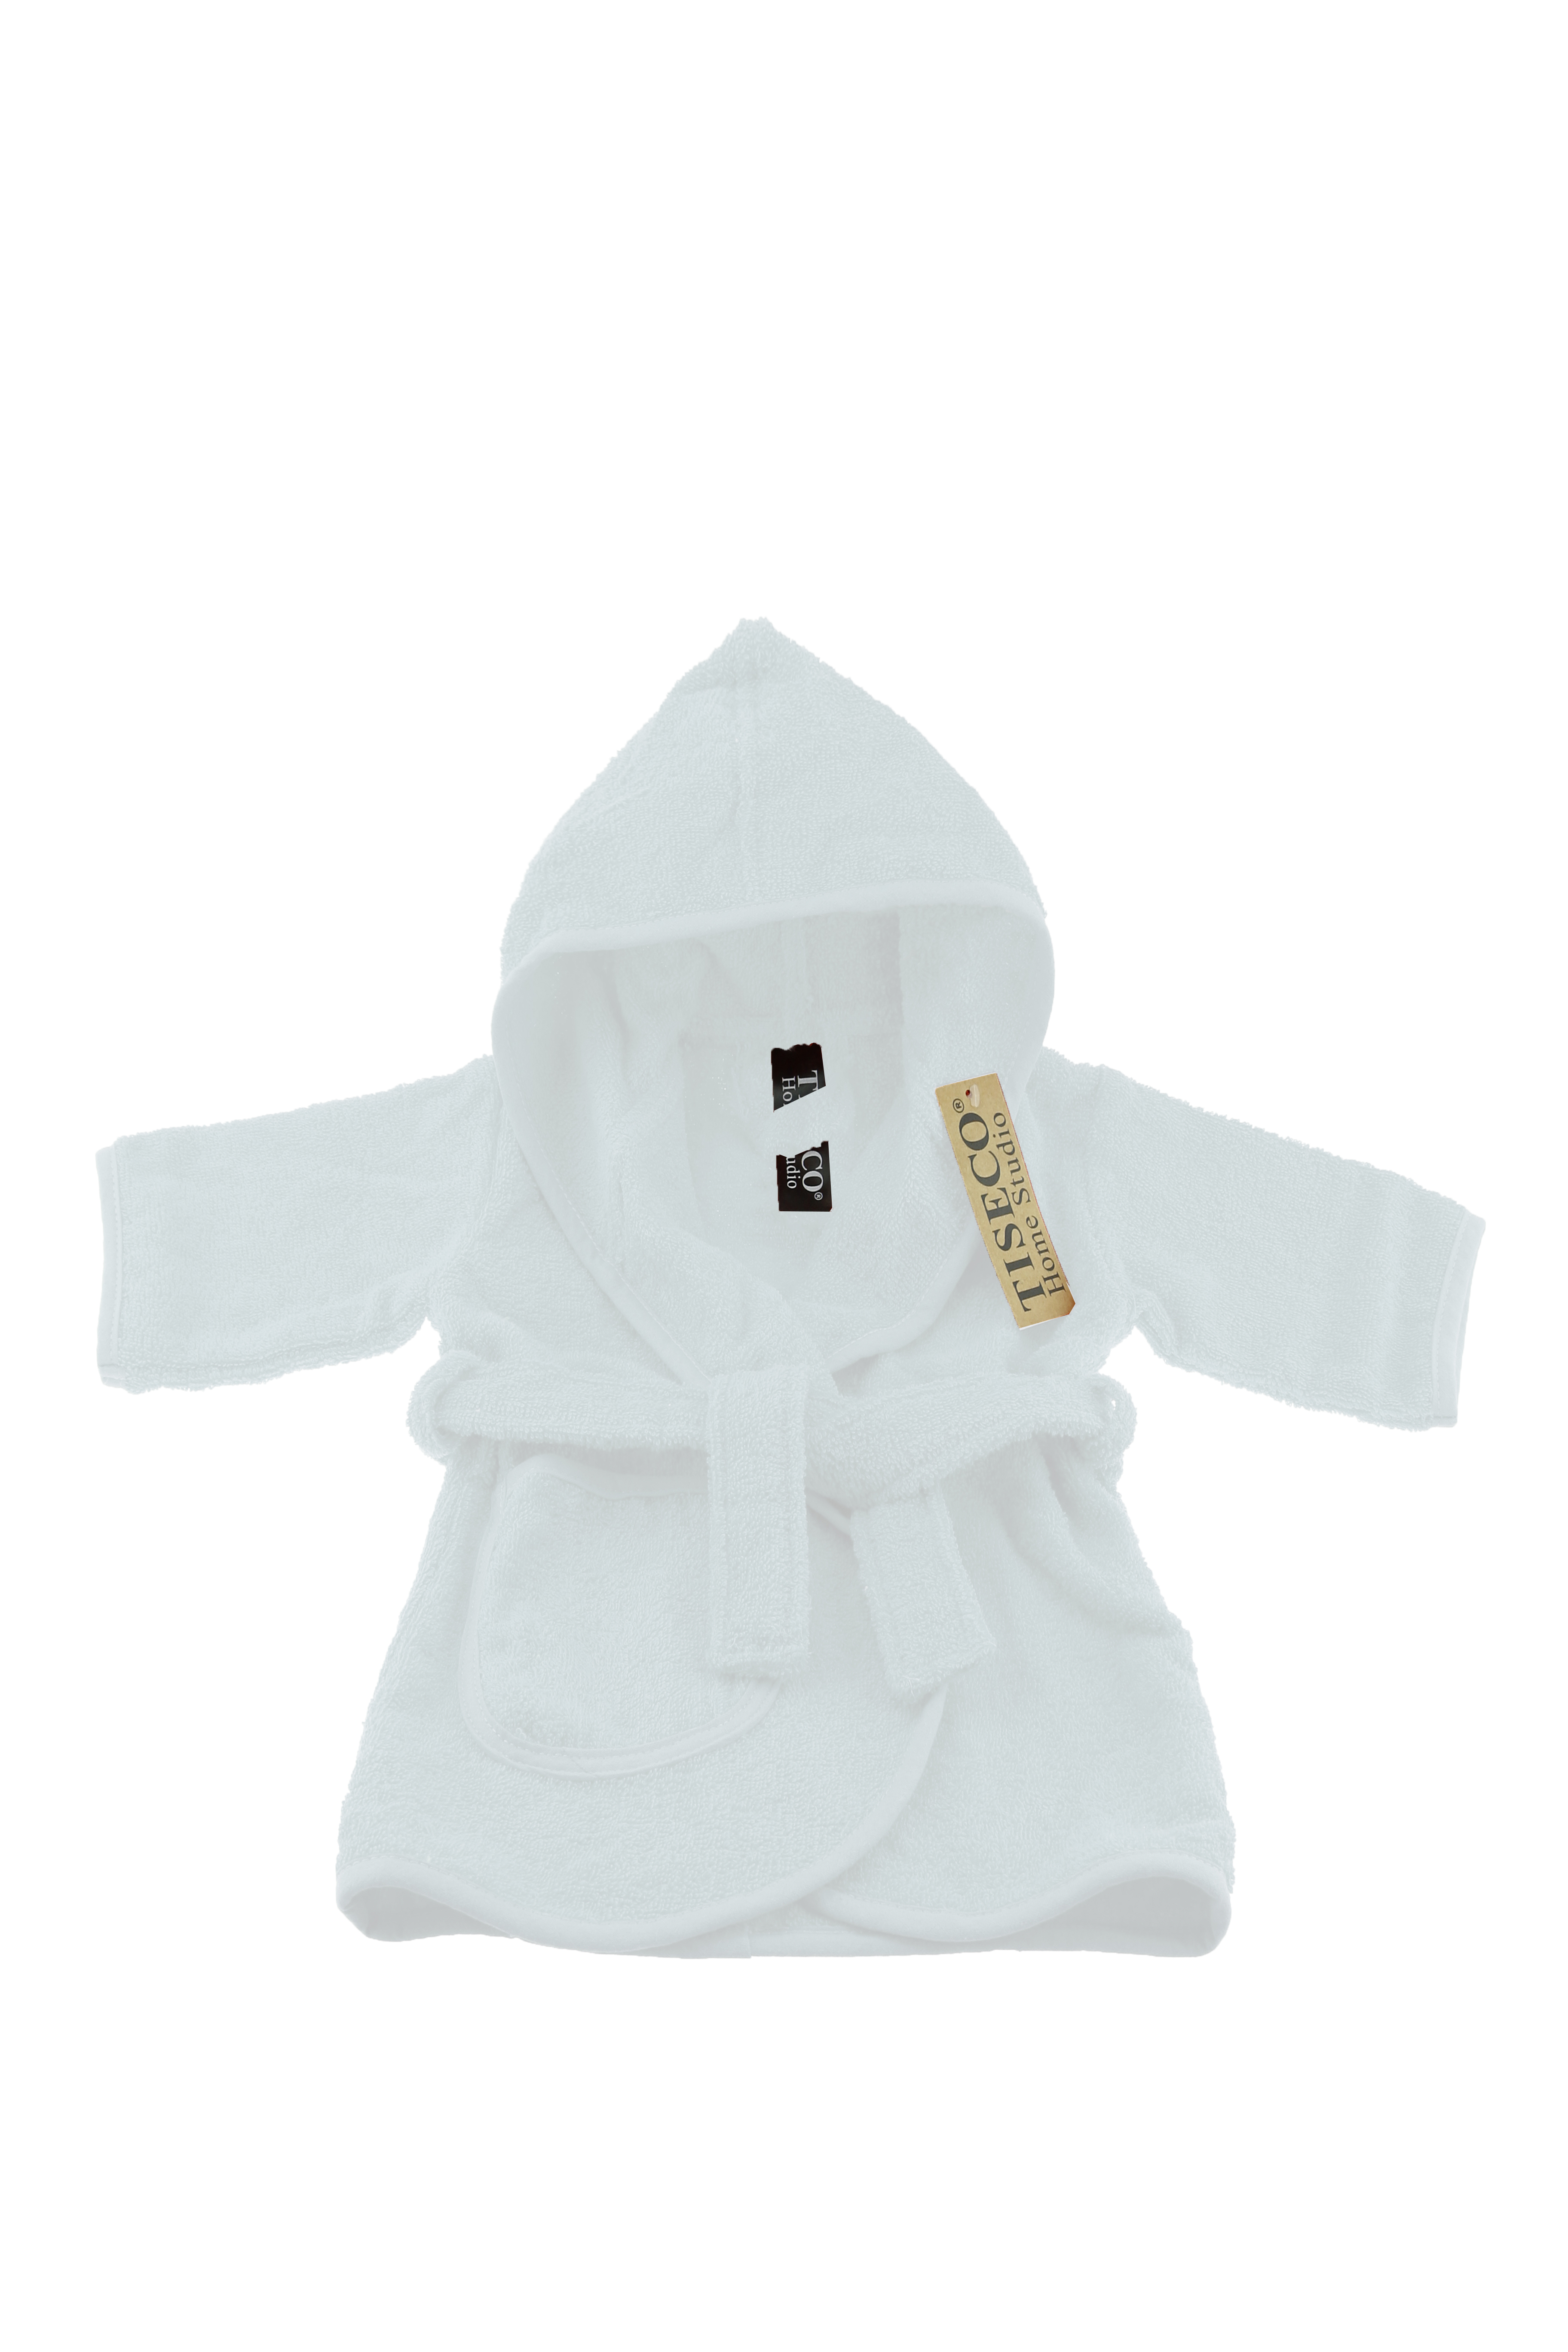 Baby badjas uni - 2-4 jaar, wit